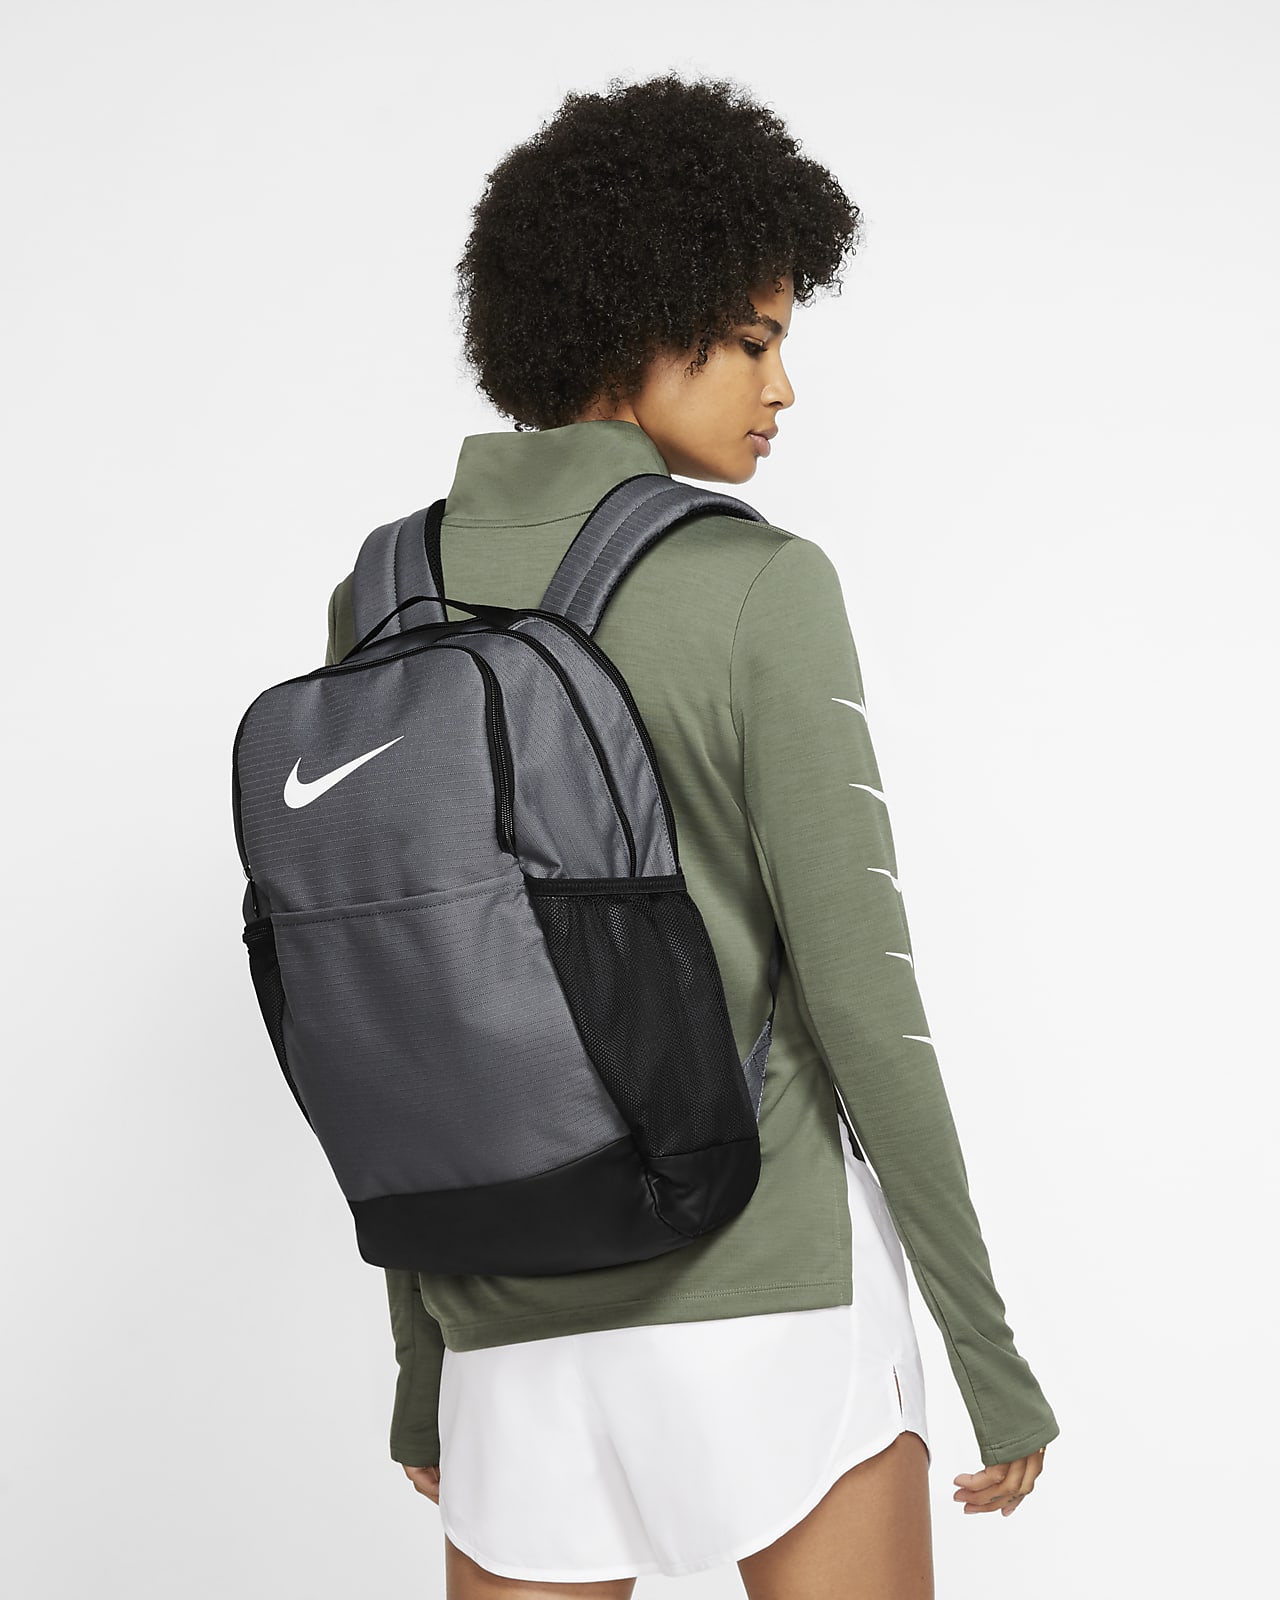 Nike Brasilia Training Backpack (Medium)